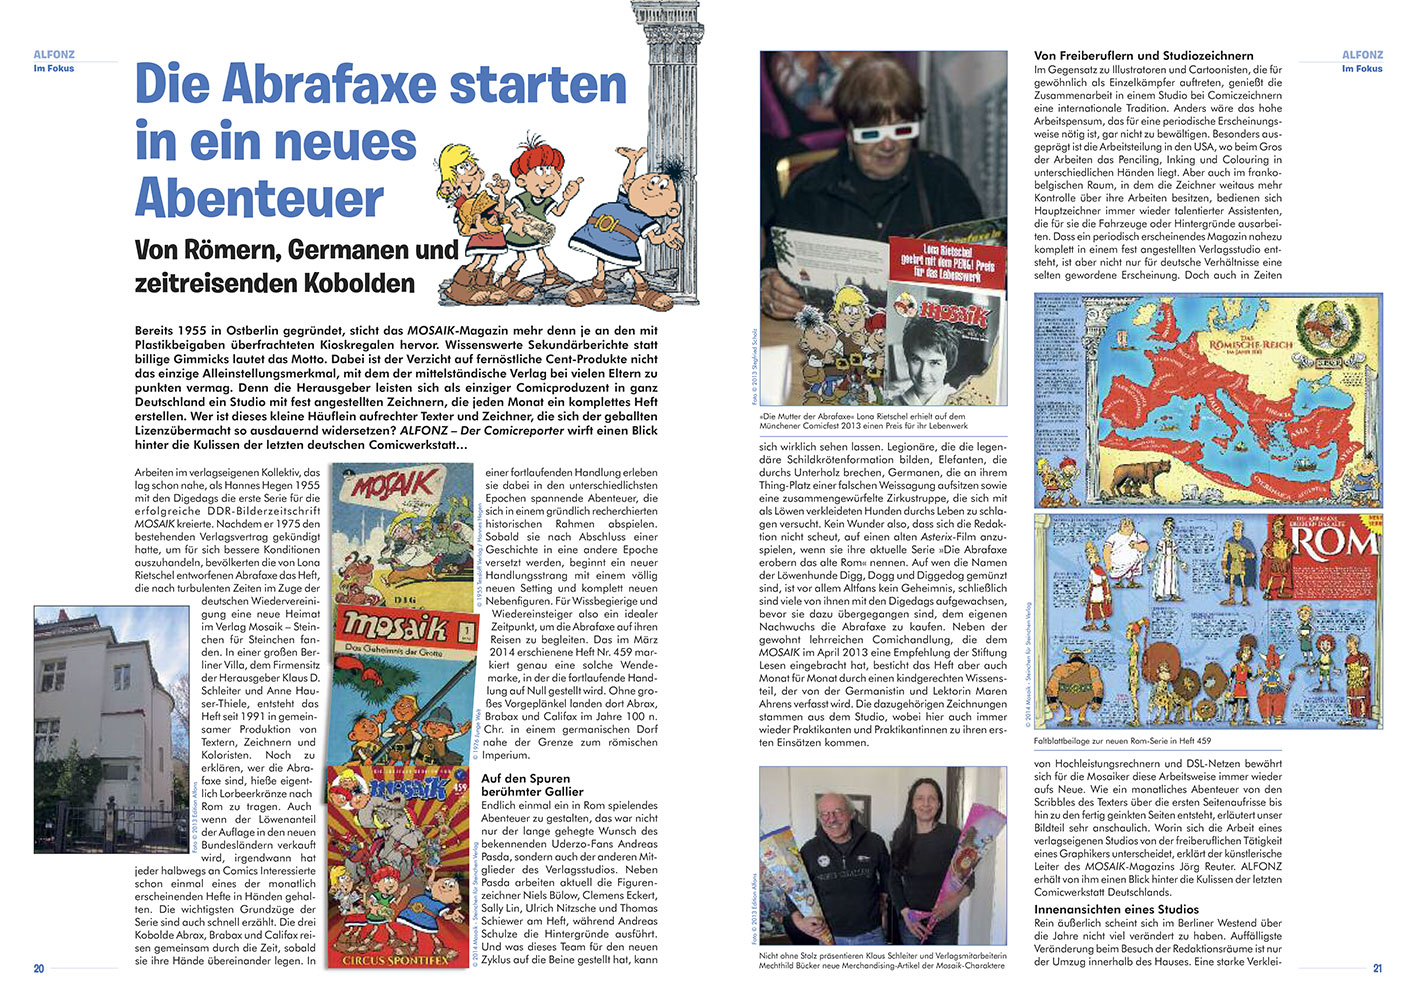 Mosaik: Blick hinter die Kulissen der letzten deutschen Comicwerkstatt